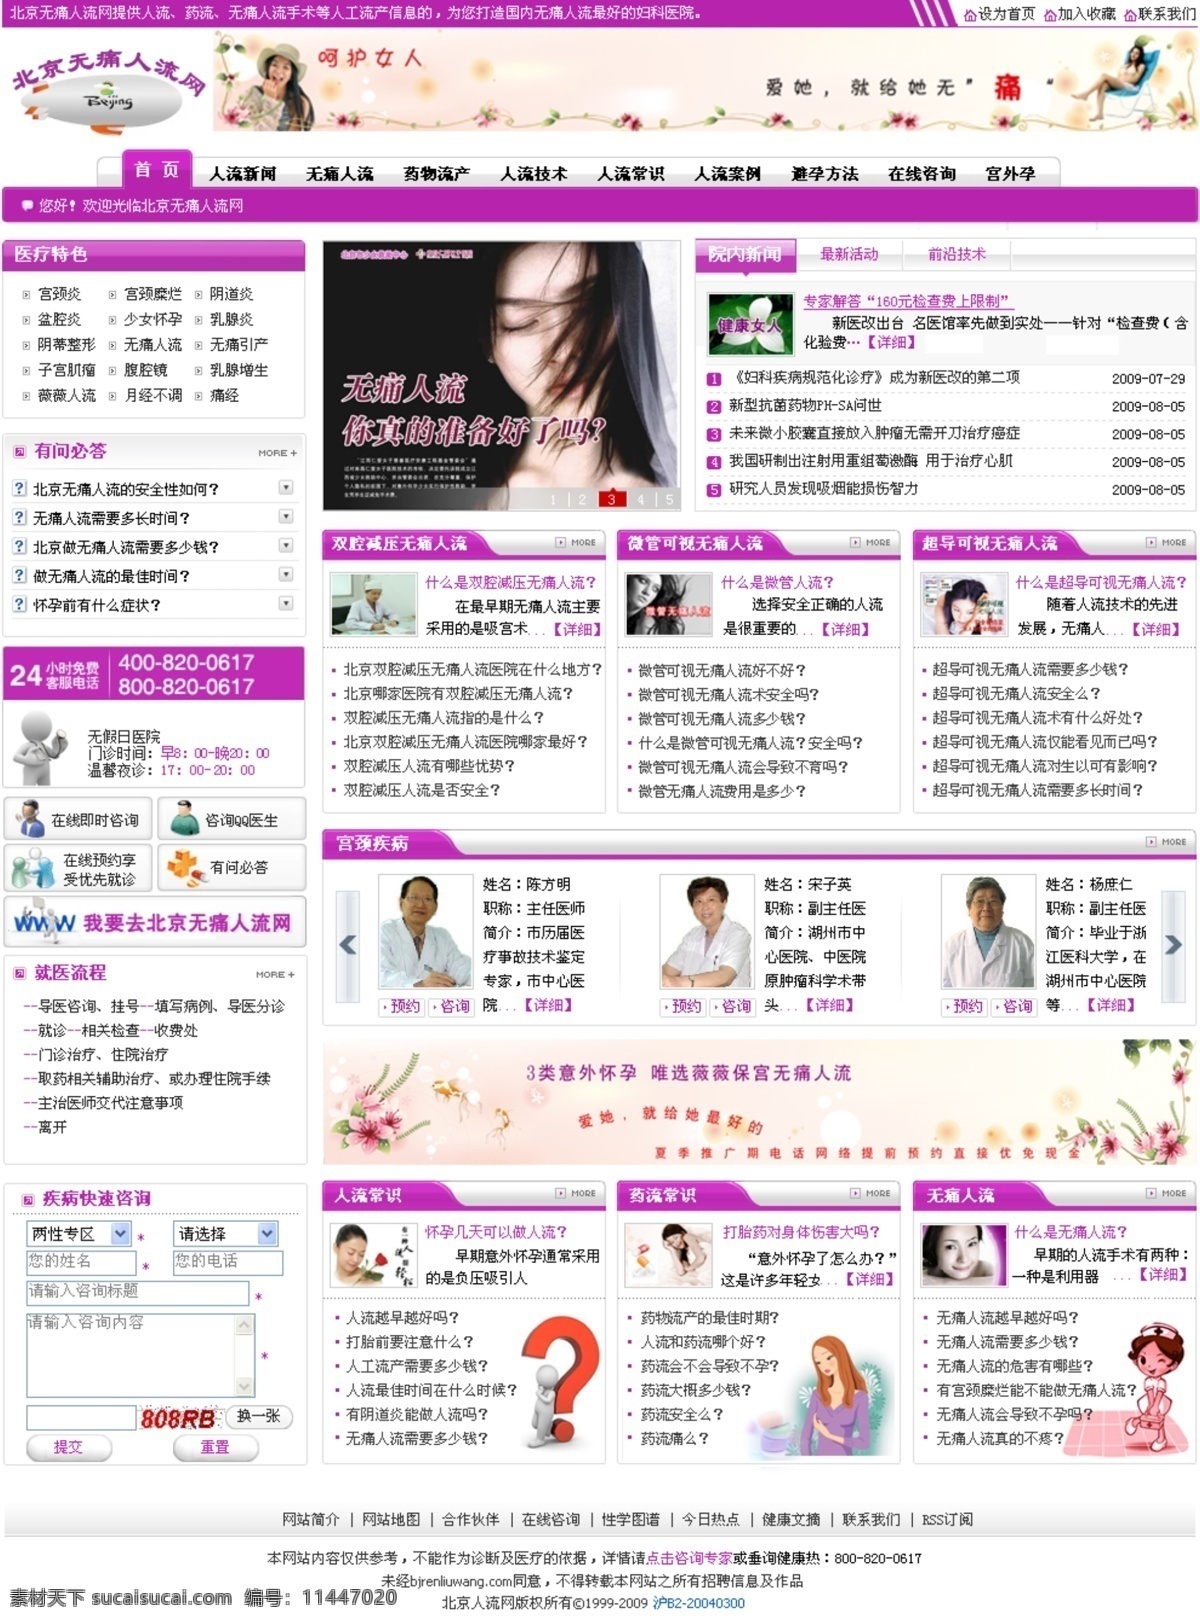 女子医院 网页 网页模板 网页设计 医院 源文件 中文模版 紫色 模板下载 医院网页设计 psd源文件